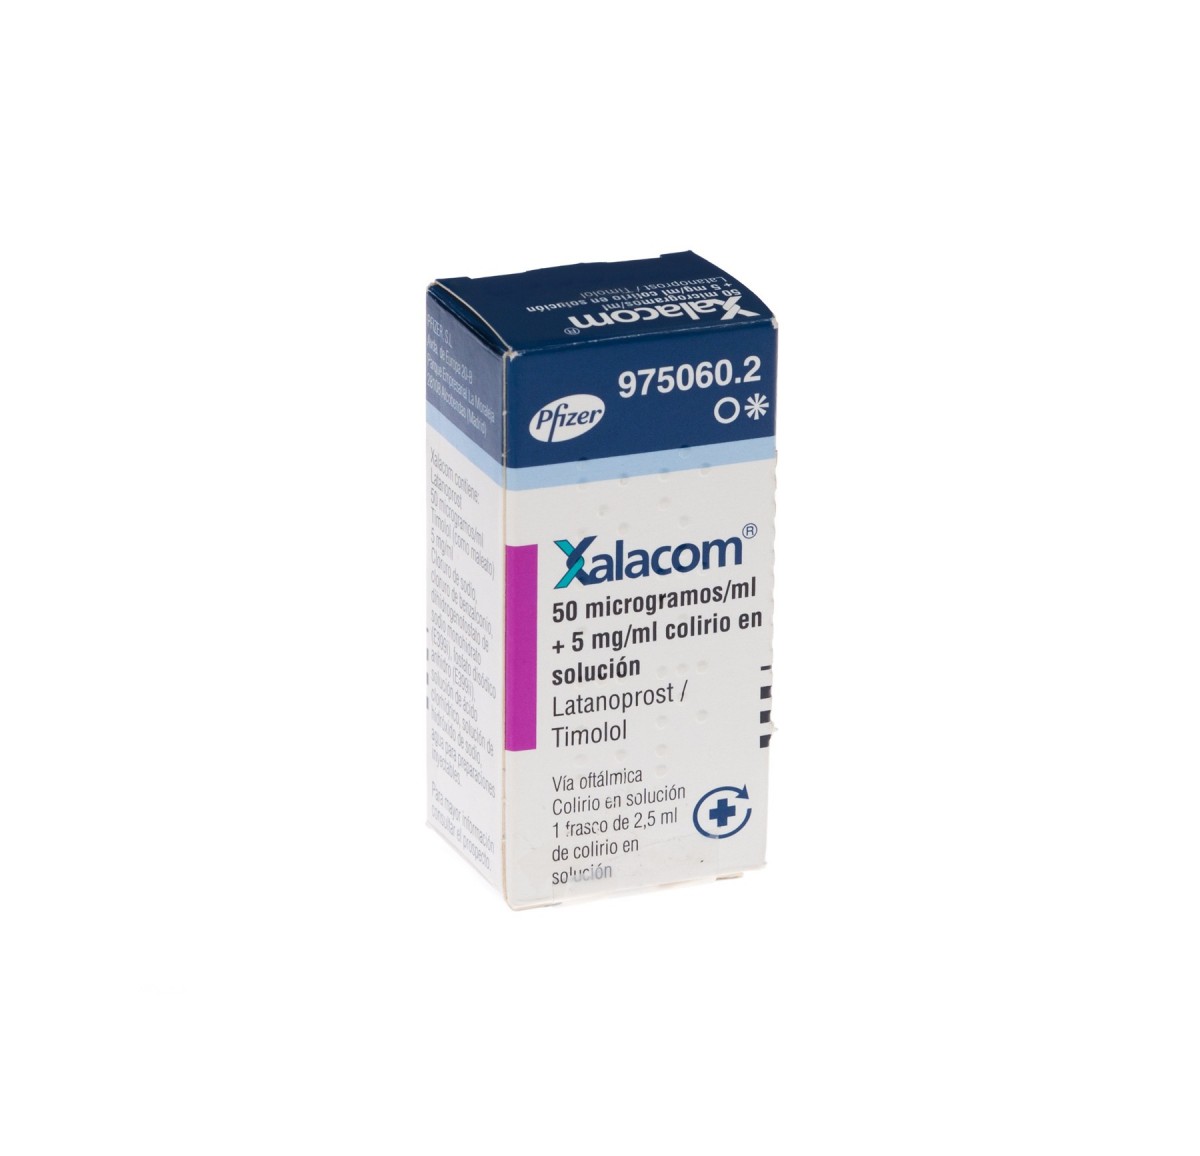 XALACOM 50 microgramos/ml + 5 mg/ml COLIRIO EN SOLUCION , 1 frasco de 2,5 ml fotografía del envase.